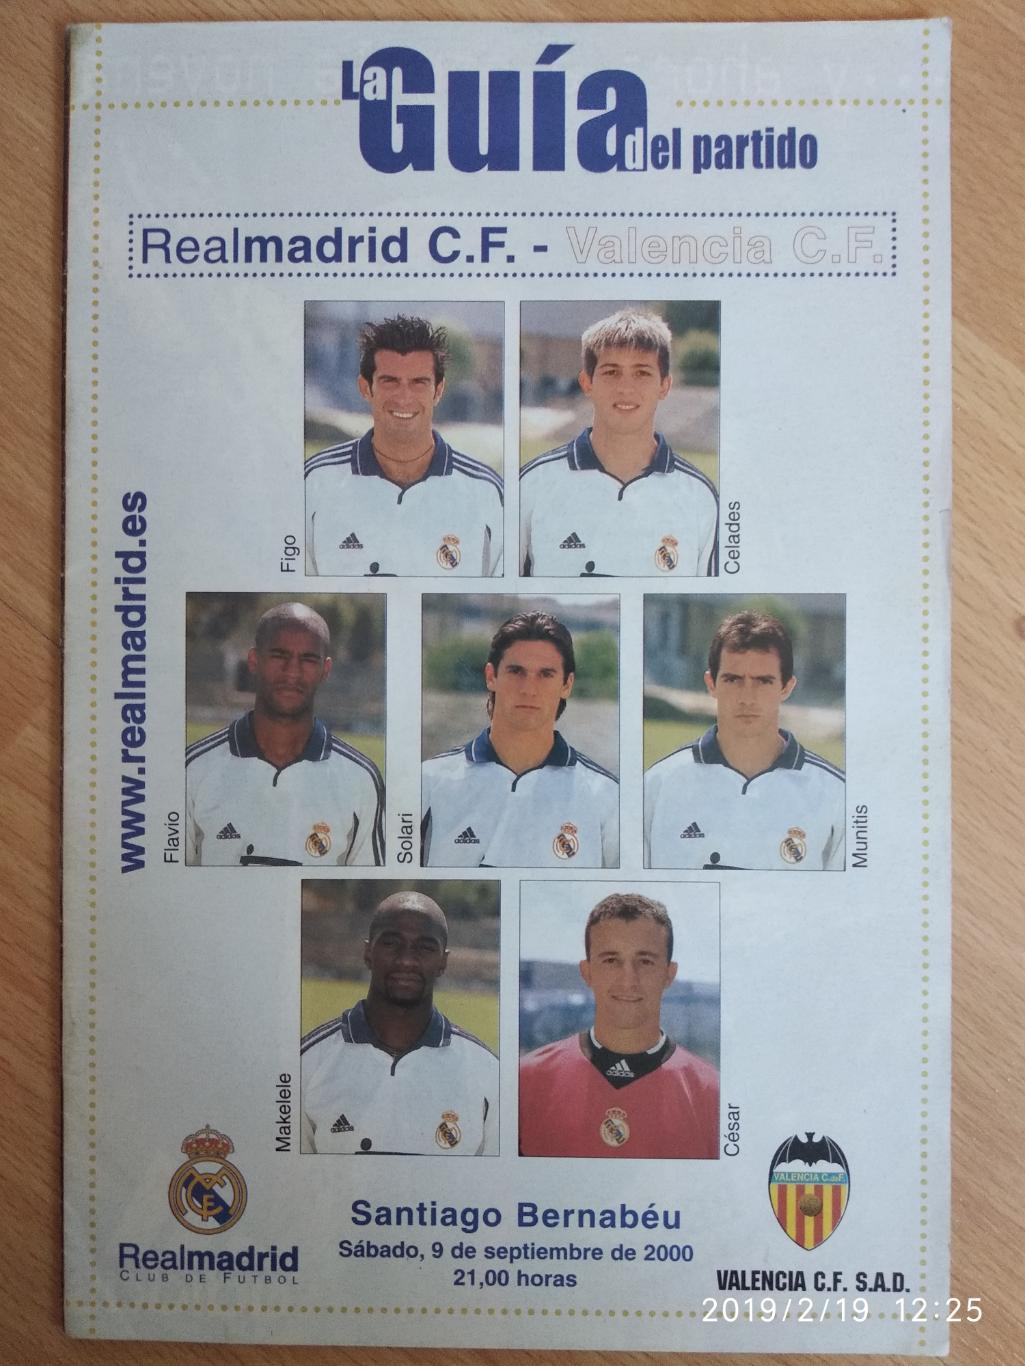 Реал Мадрид - Валенсия Чемпионат Испании 09.09.2000